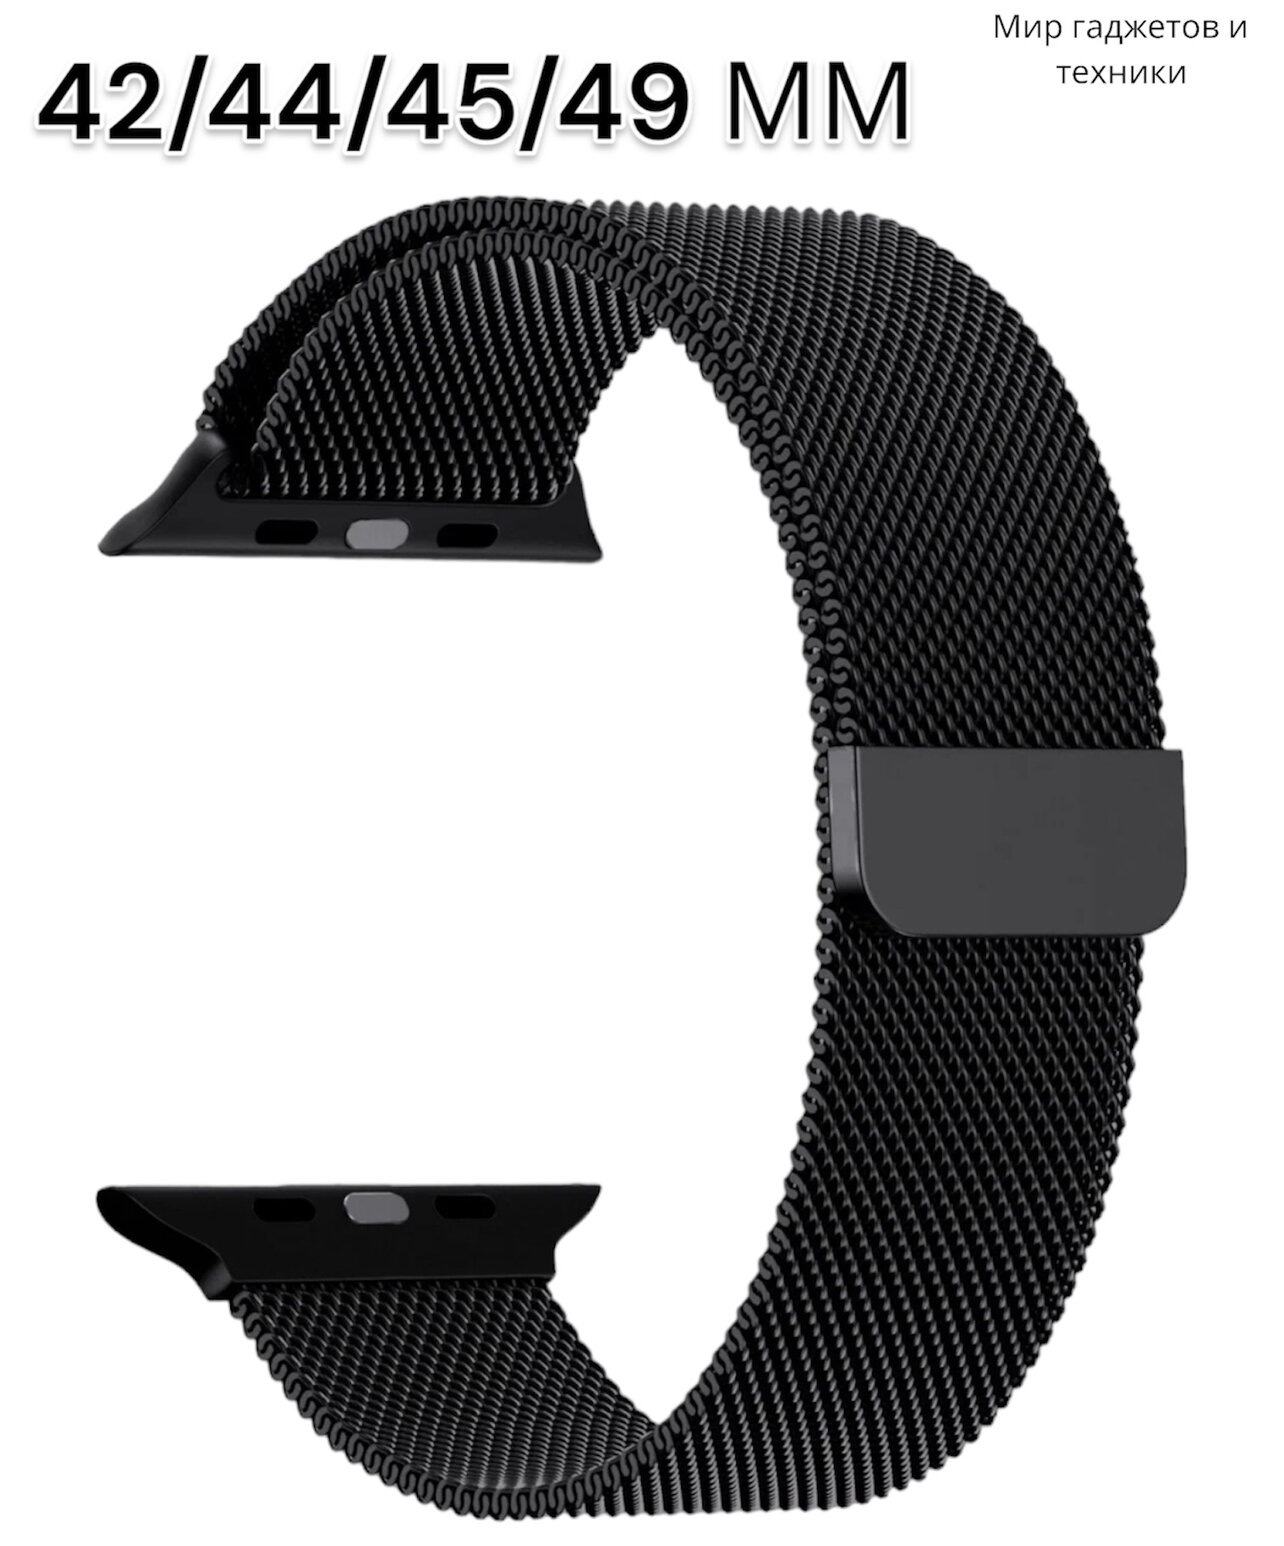 Ремешок миланcкий из нержавеющей стали для Apple Watch 42/44/45/49мм, черный, на магните